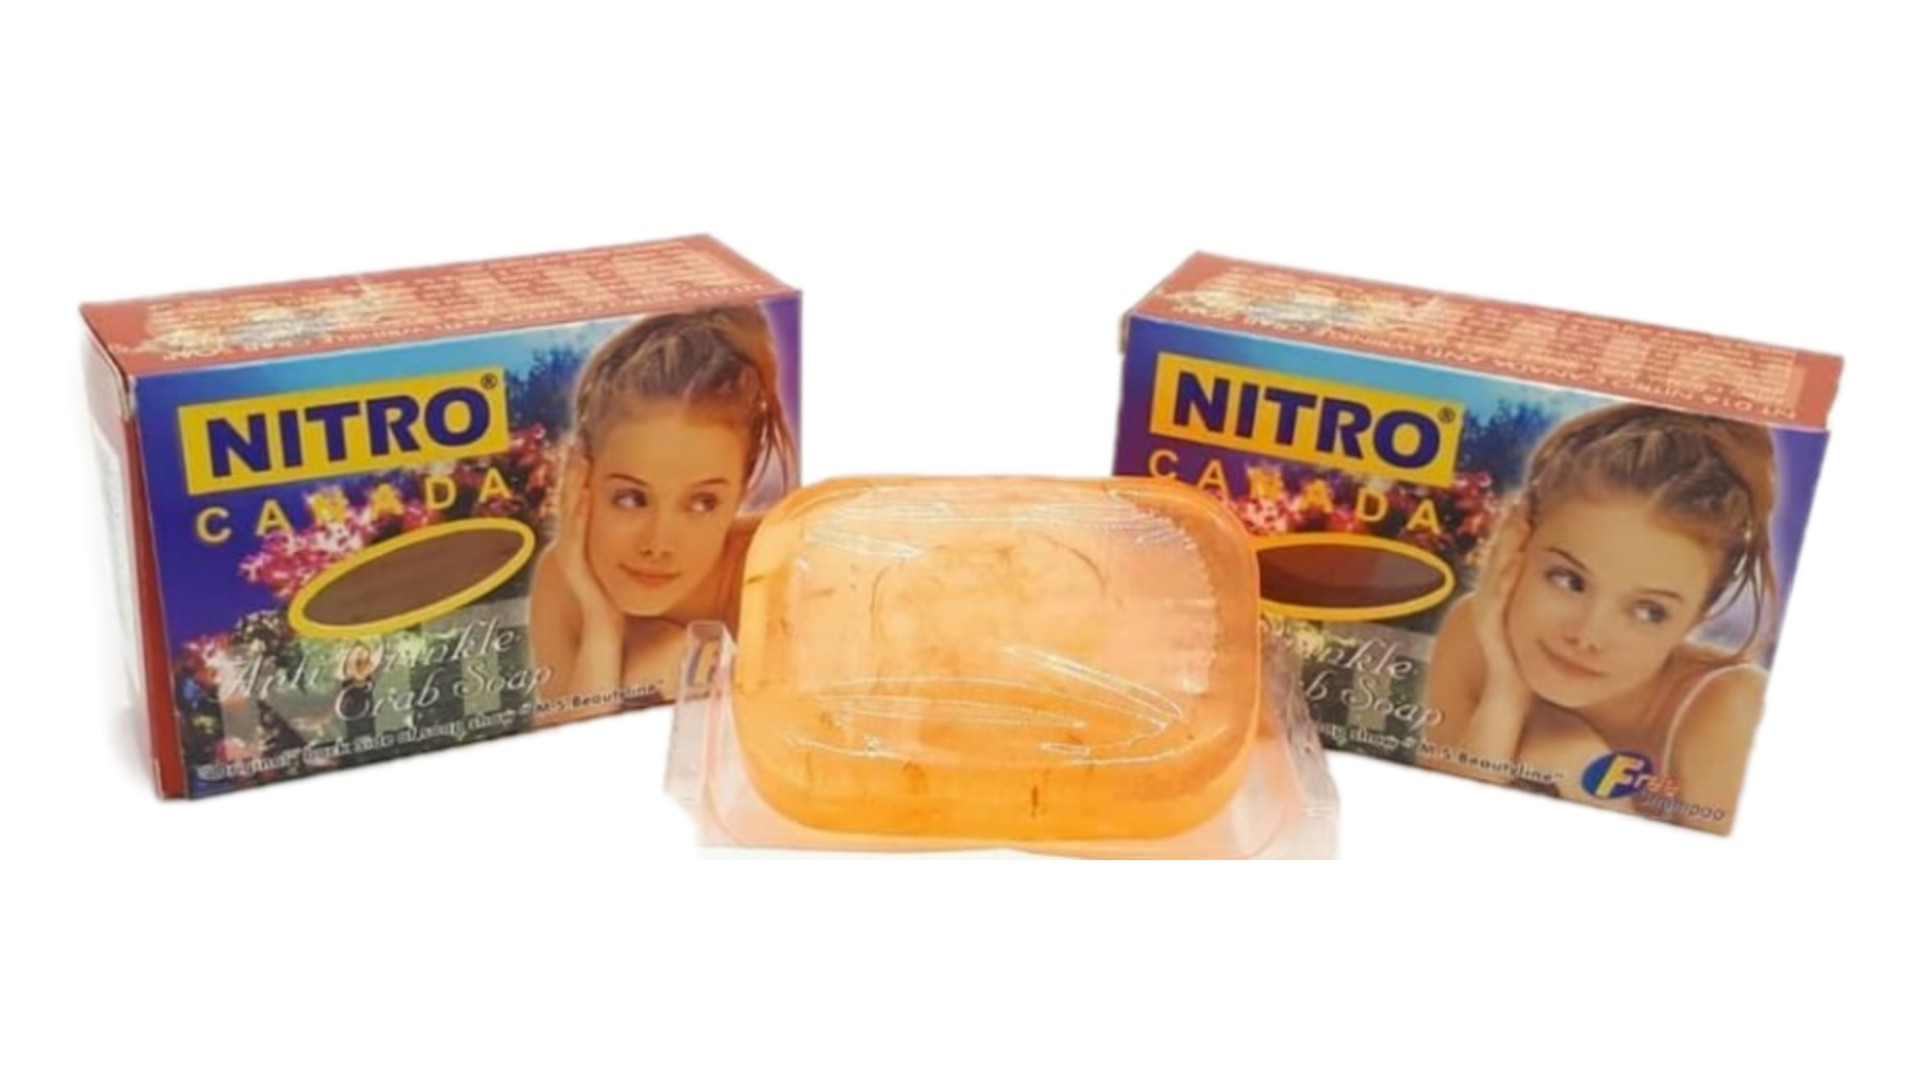 صابون-خرچنگ-نیترو-nitro